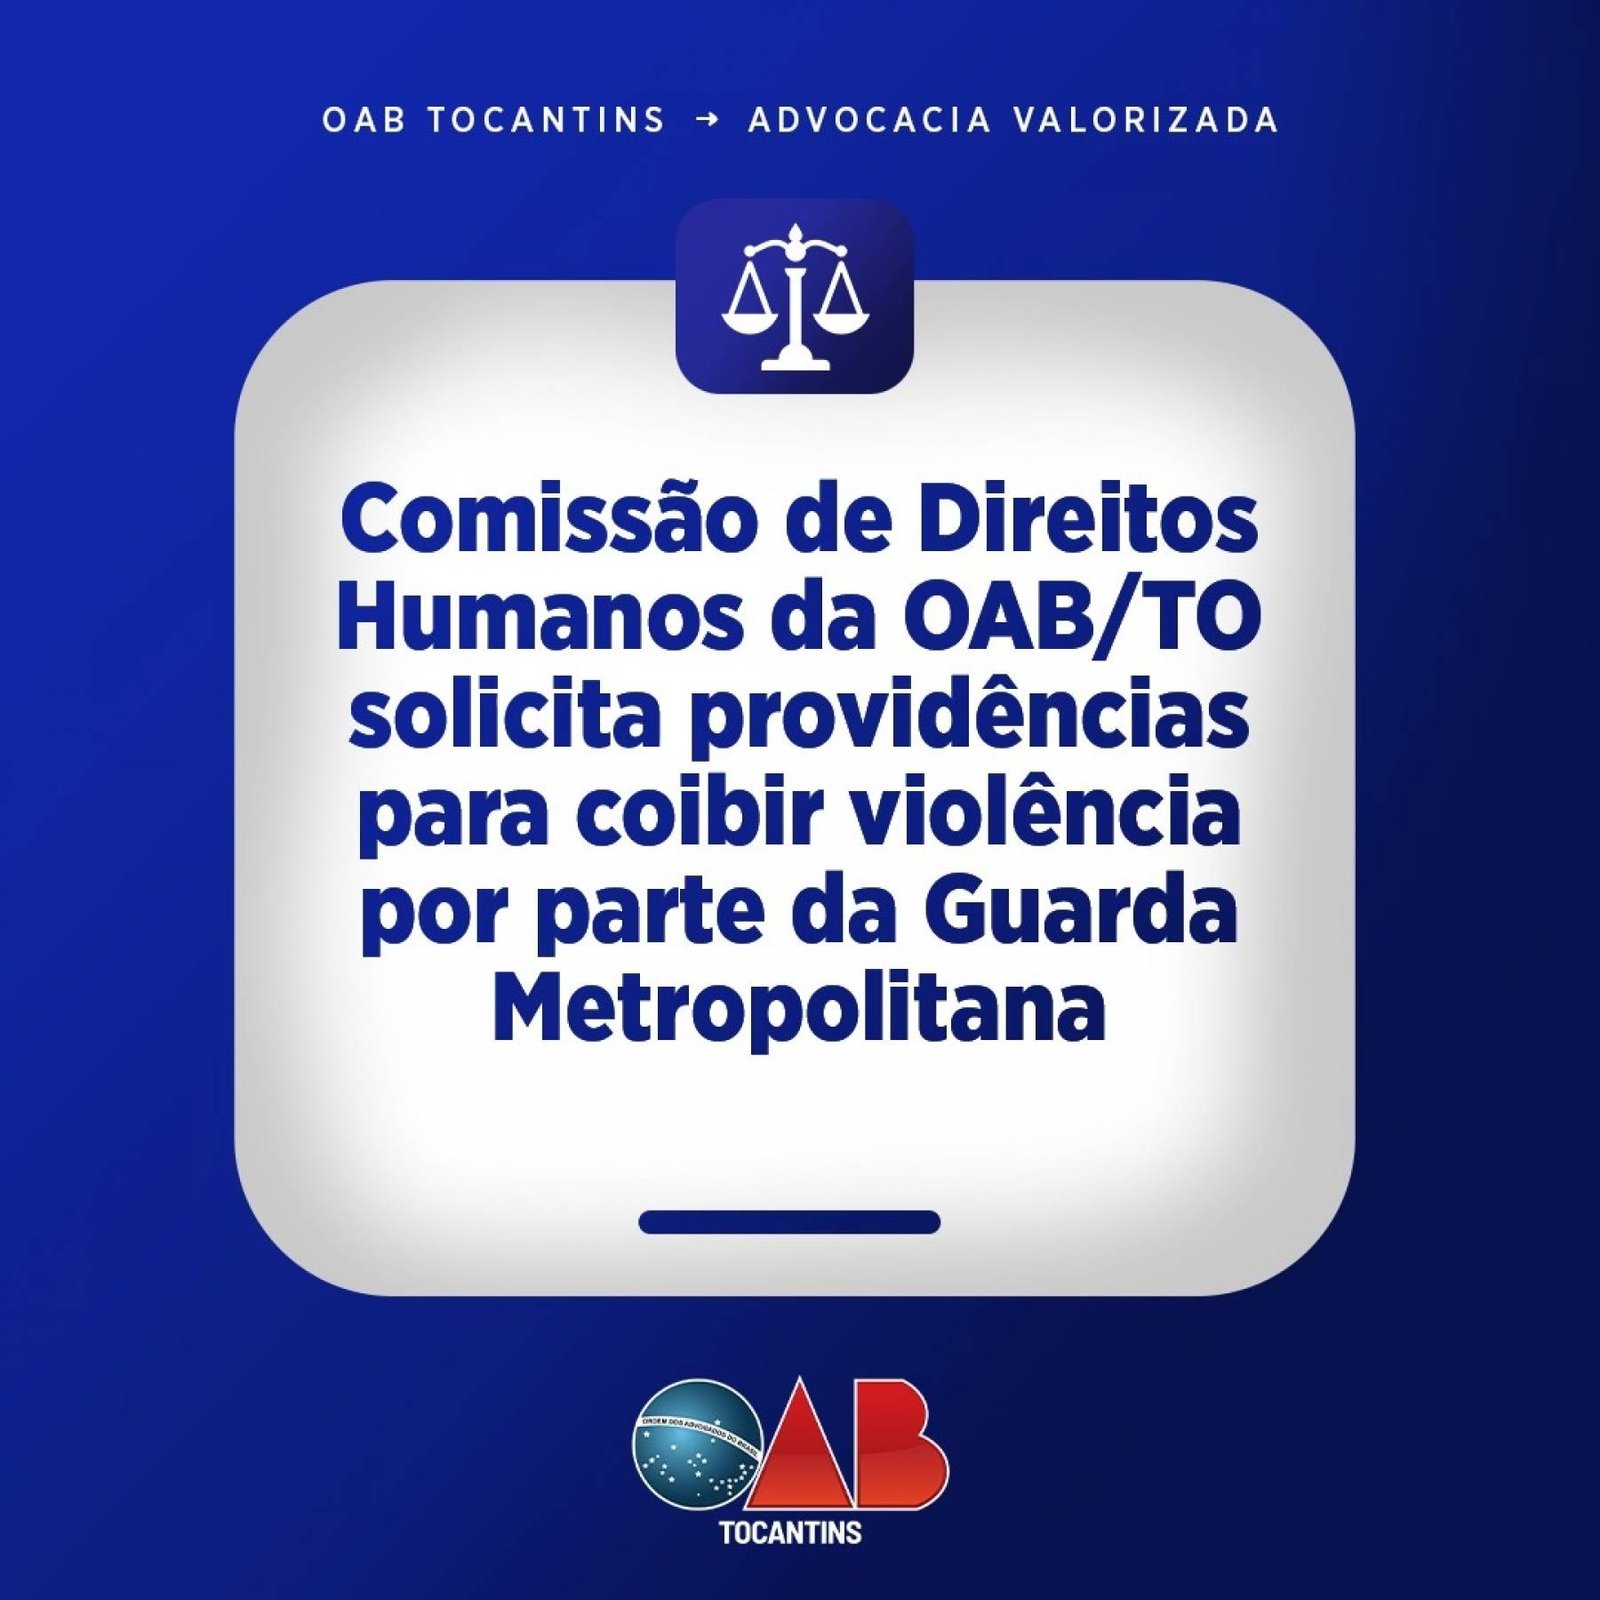 Comissão de Direitos Humanos da OAB/TO solicita providências para coibir violência por parte da Guarda Metropolitana